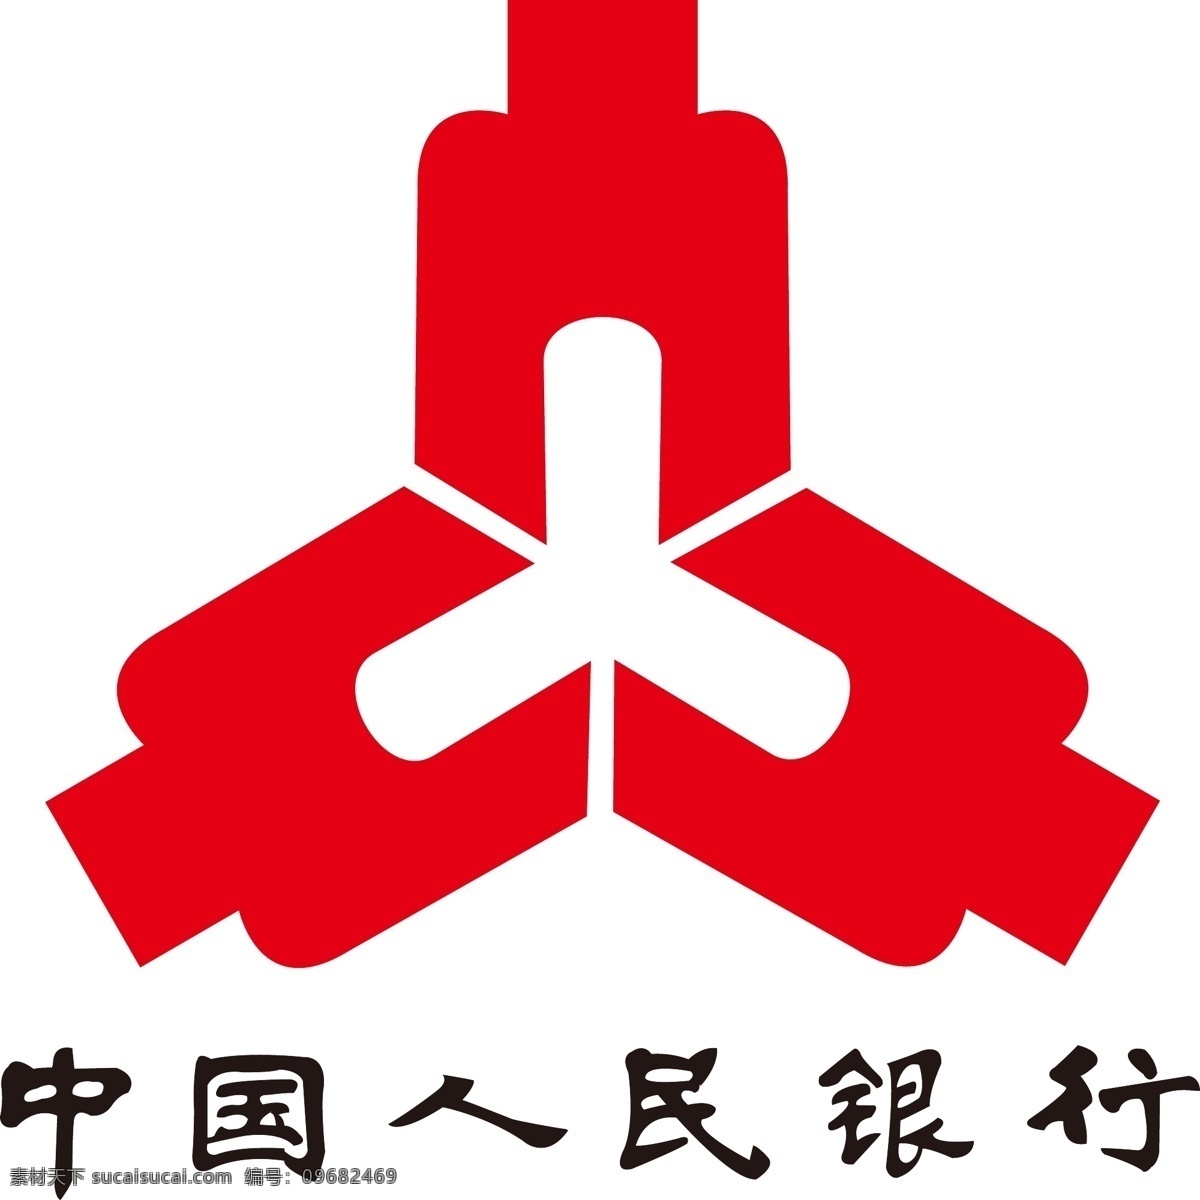 中国人民银行 人民银行 logo 人民银行标志 人民银行标识 人民银行商标